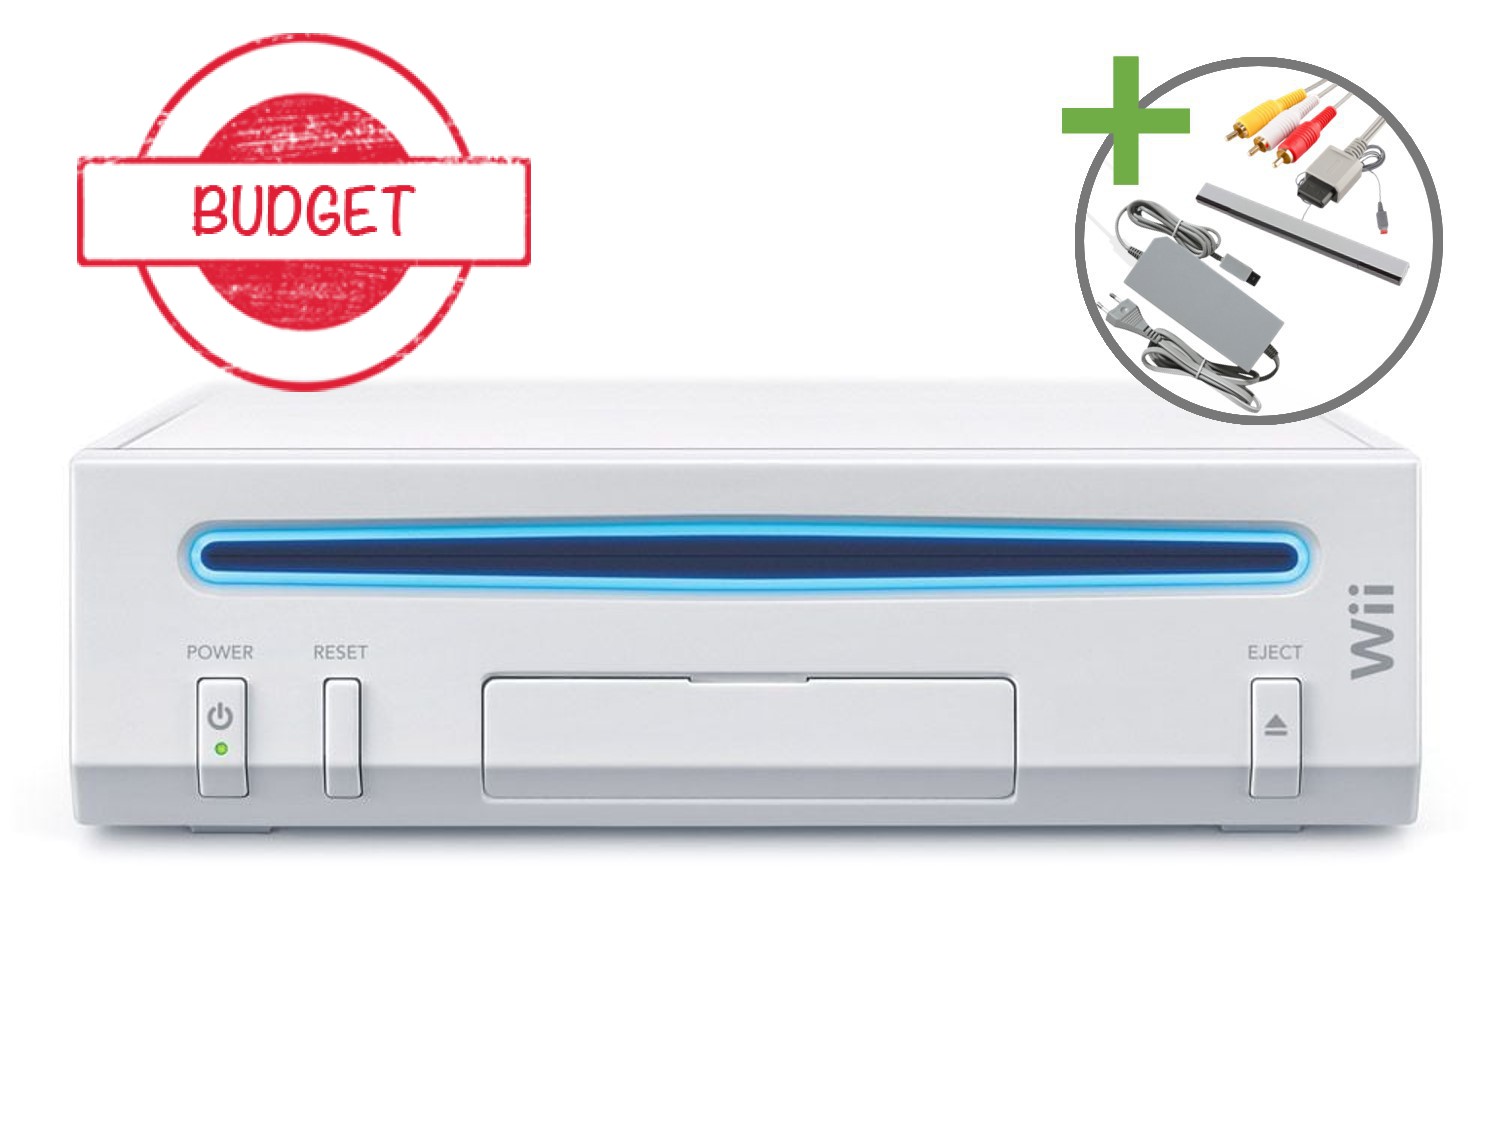 Nintendo Wii Starter Pack - Wii Sports + Wii Sports Resort White Edition - Budget - Wii Hardware - 2